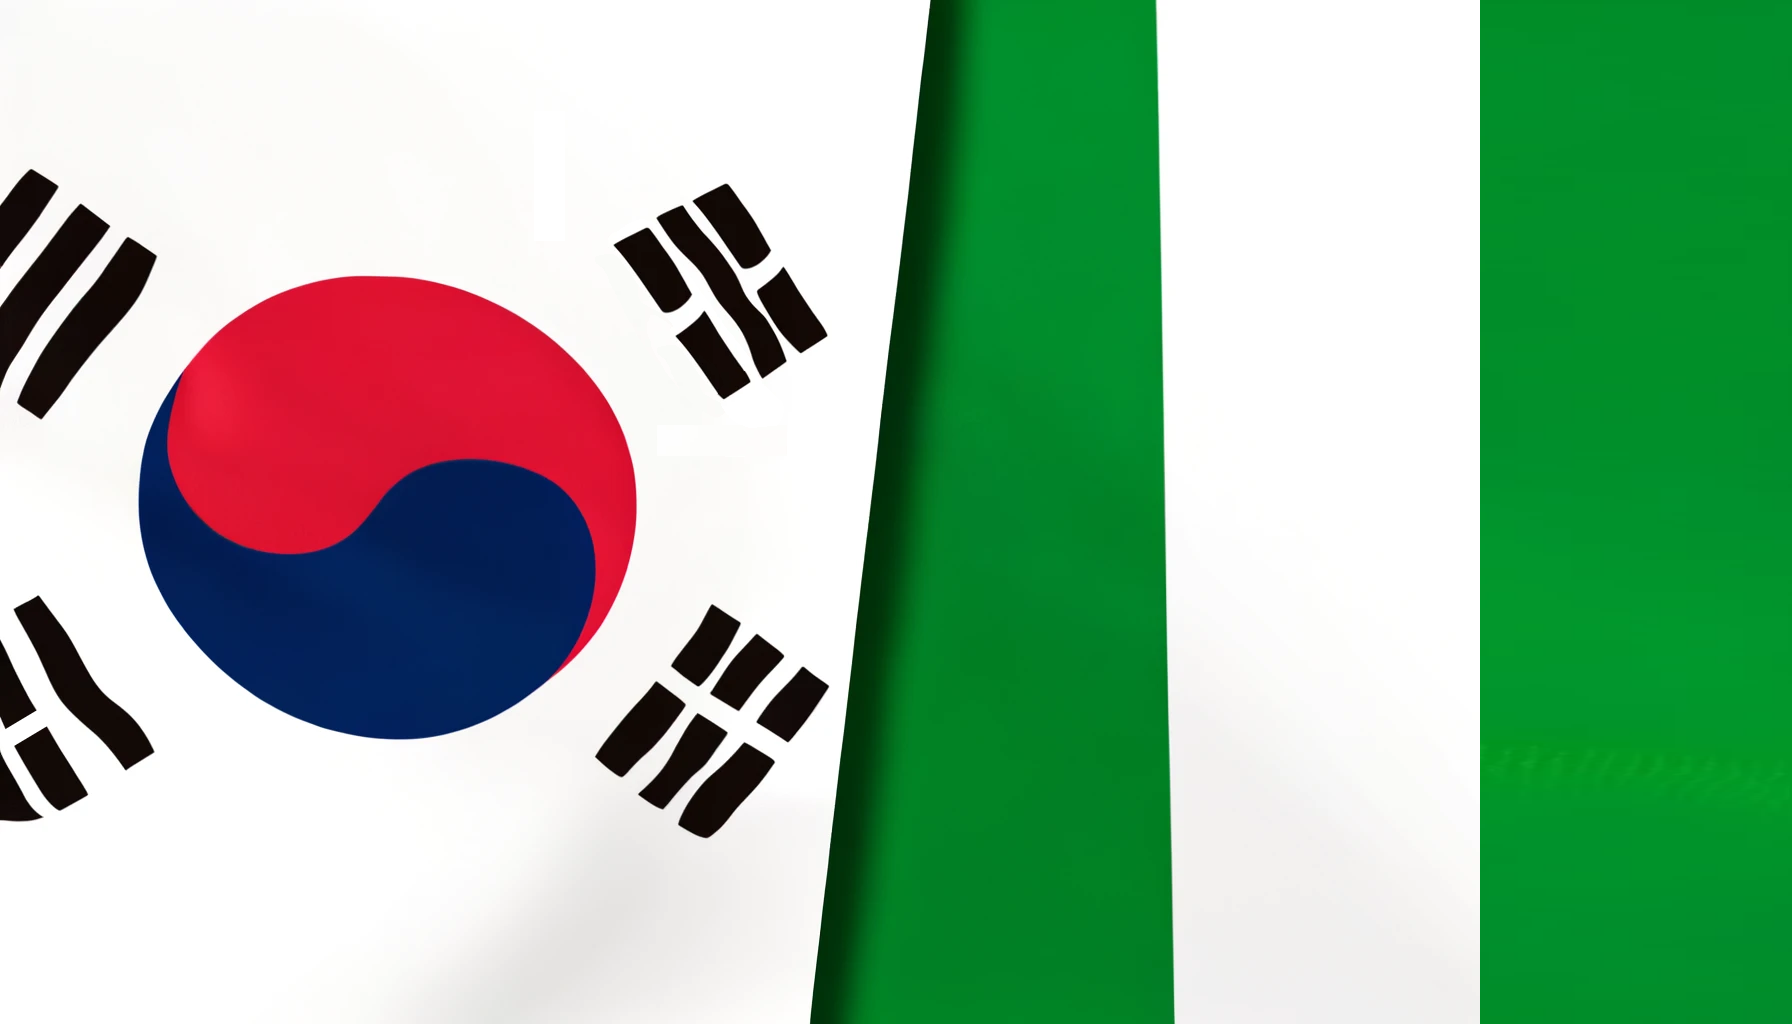 South Korea and Nigeria signed a MOU